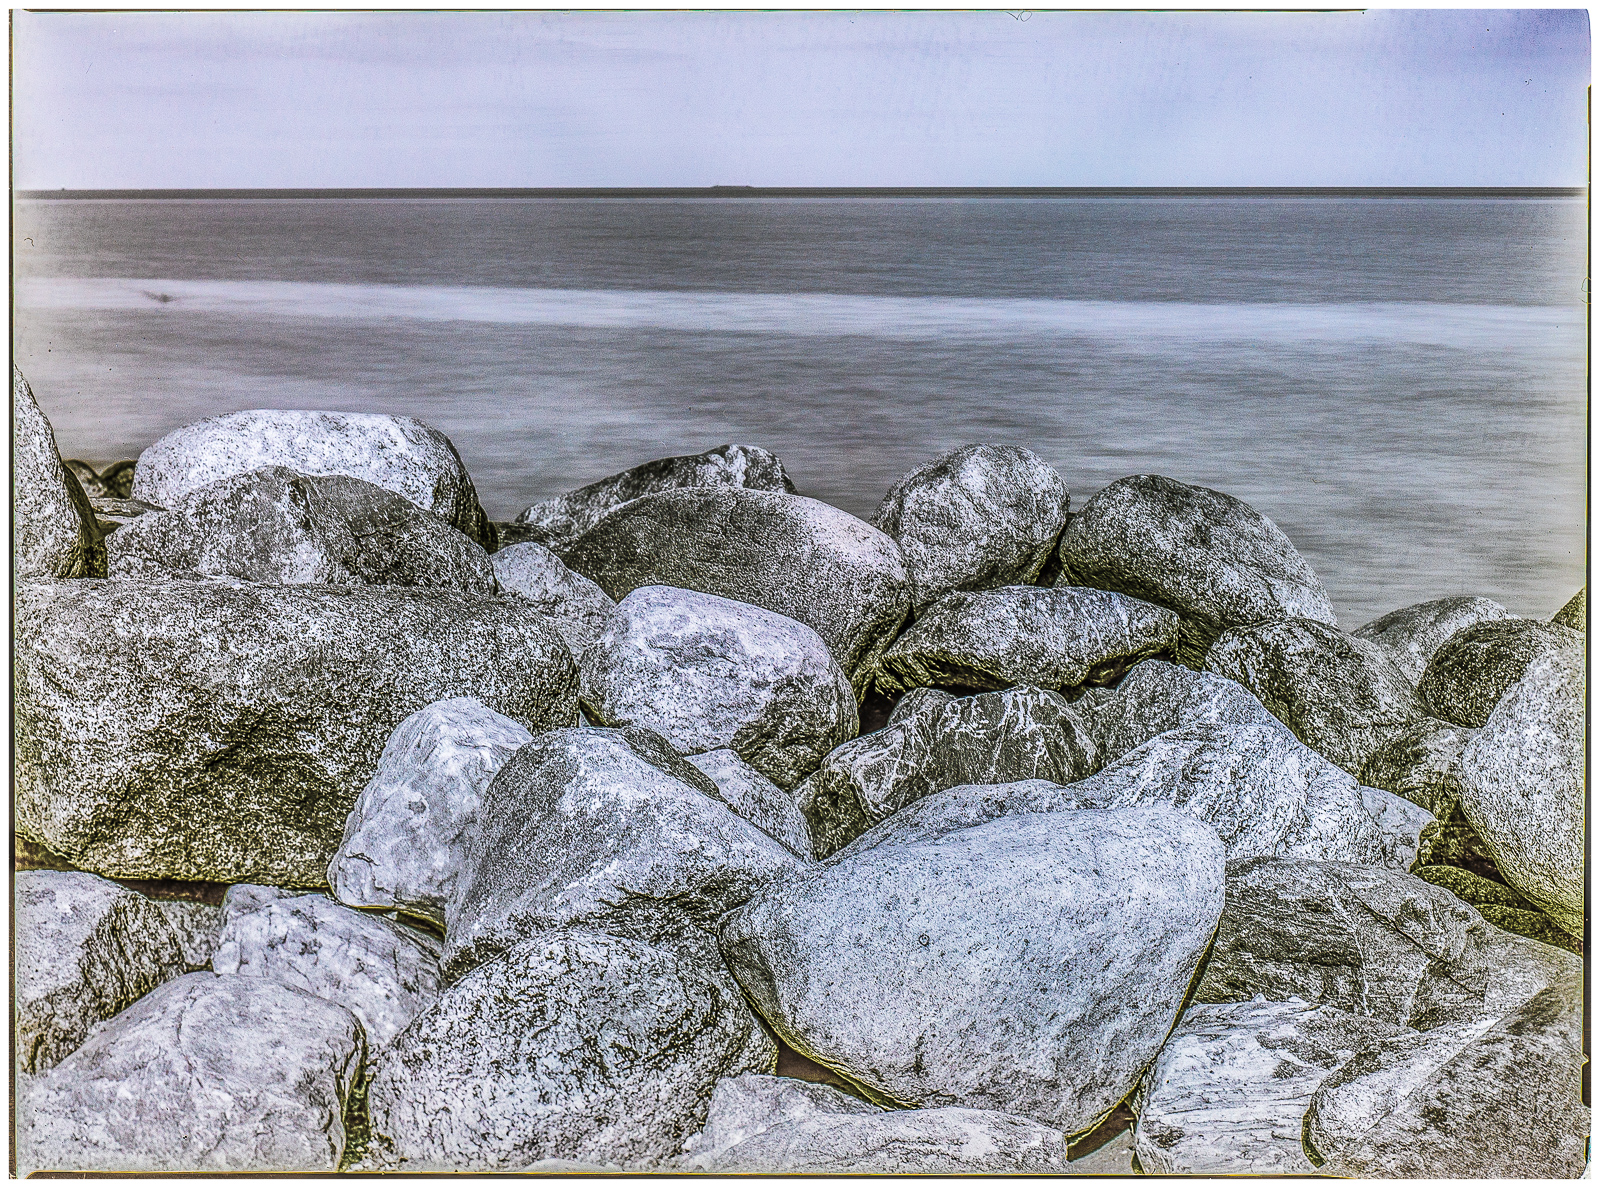 Querformat einer KüstenLandschaft. Der Horizont liegt nah am oberen BildRand. Darunter sanft dünendes Wasser, vorn sehr große runde Steine, die als WellenBrecher am Strand aufgetürmt sind. Das Bild ist schwarz-weiß mit leichter blau/brauner Tonung.